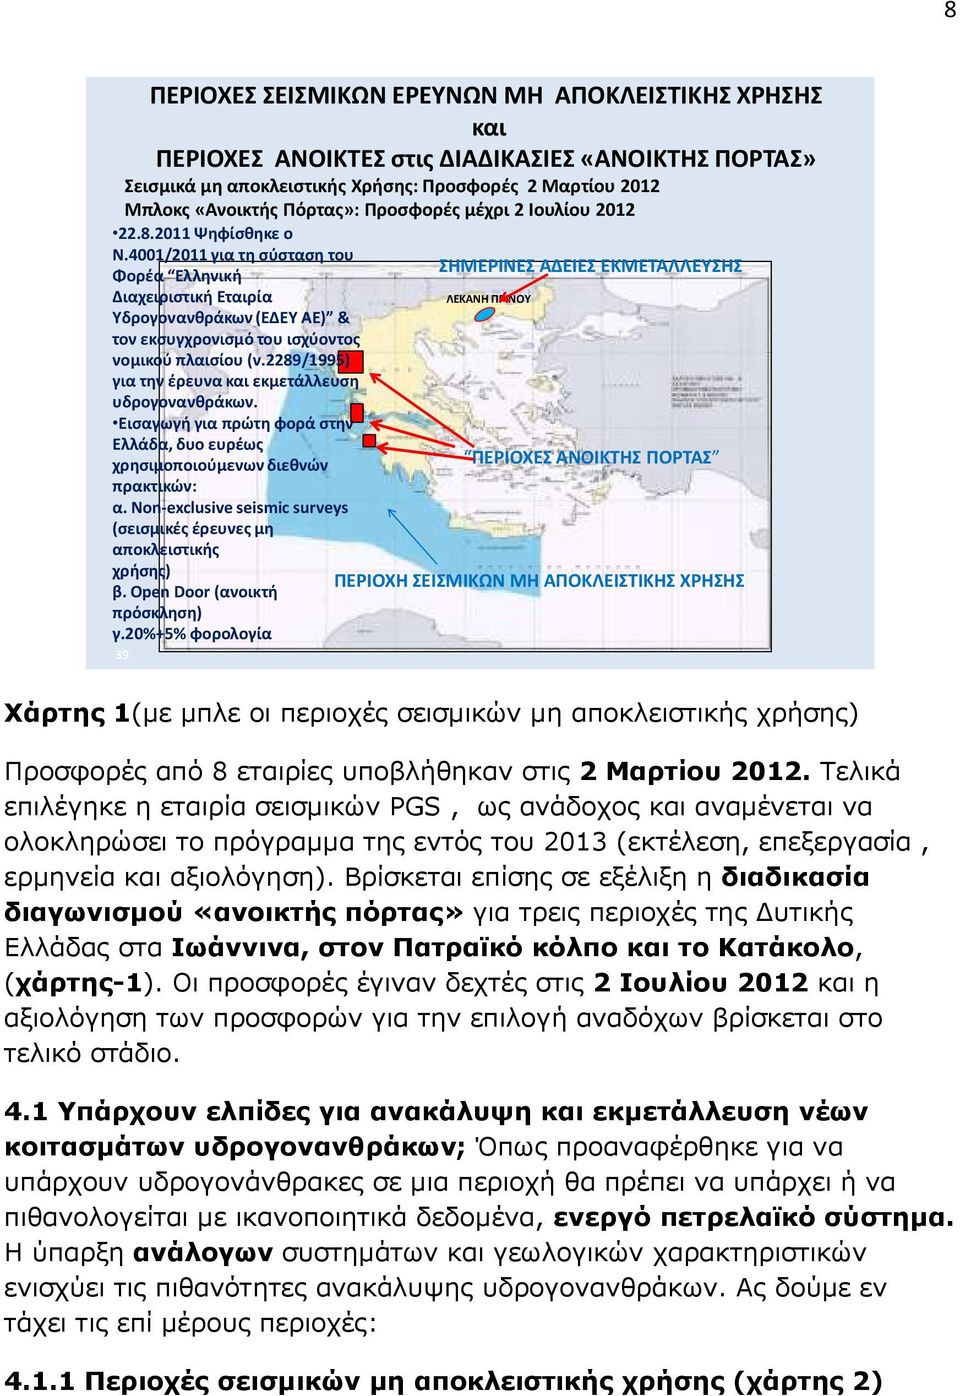 4001/2011 για τη σύσταση του Φορέα Ελληνική Διαχειριστική Εταιρία Υδρογονανθράκων (ΕΔΕΥ ΑΕ) & τον εκσυγχρονισμό του ισχύοντος νομικού πλαισίου (ν.